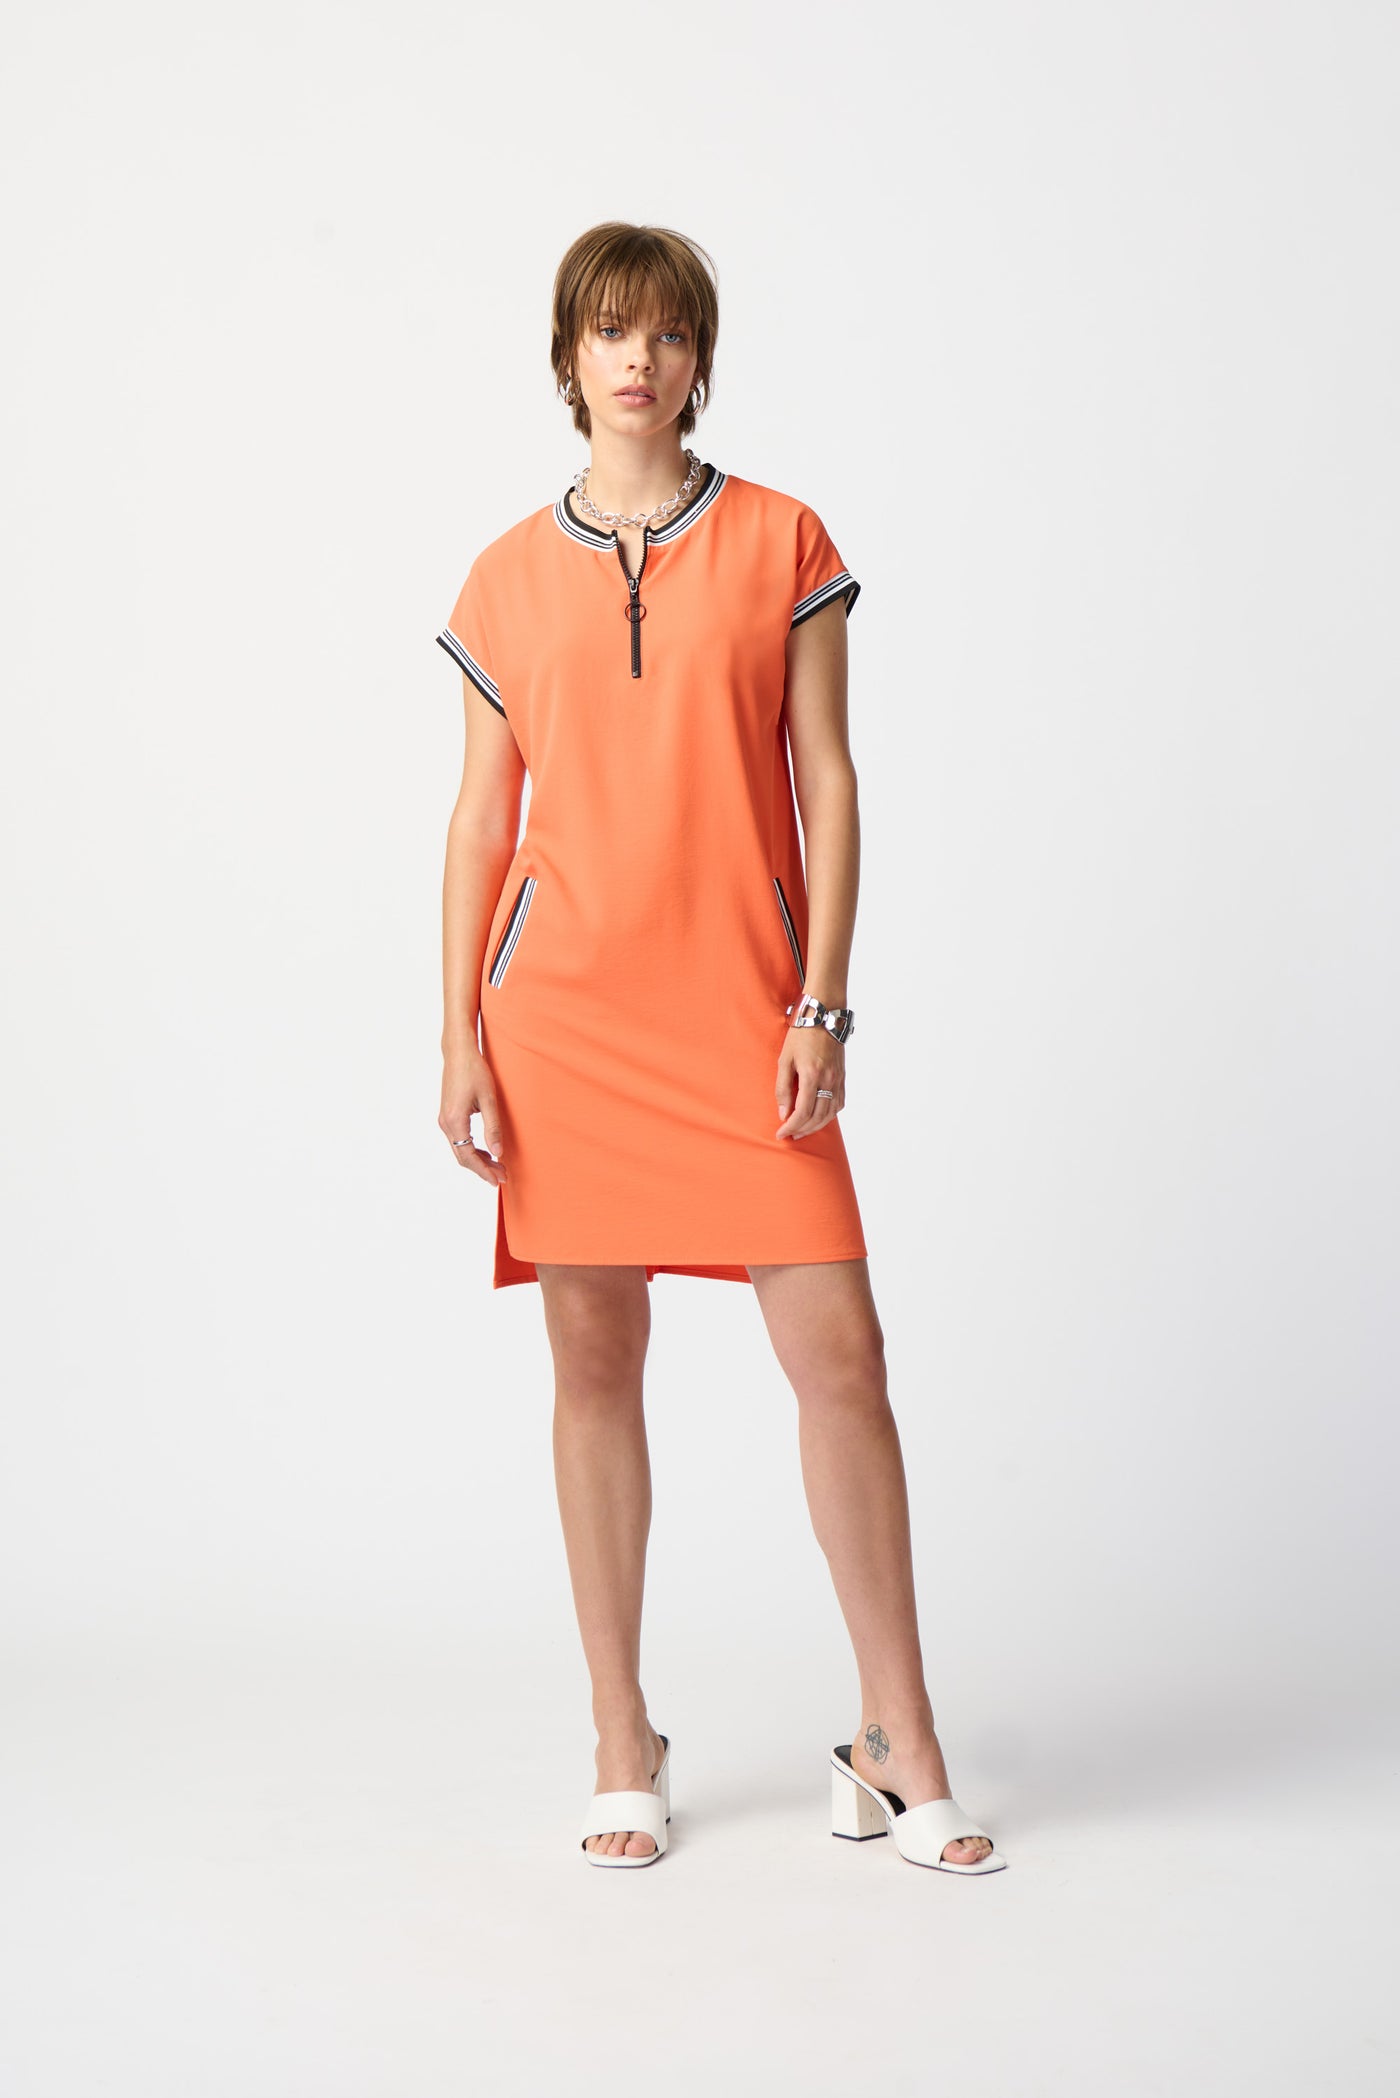 Joseph Ribkoff Orange Straight Dress With Rib Trimming & Zip